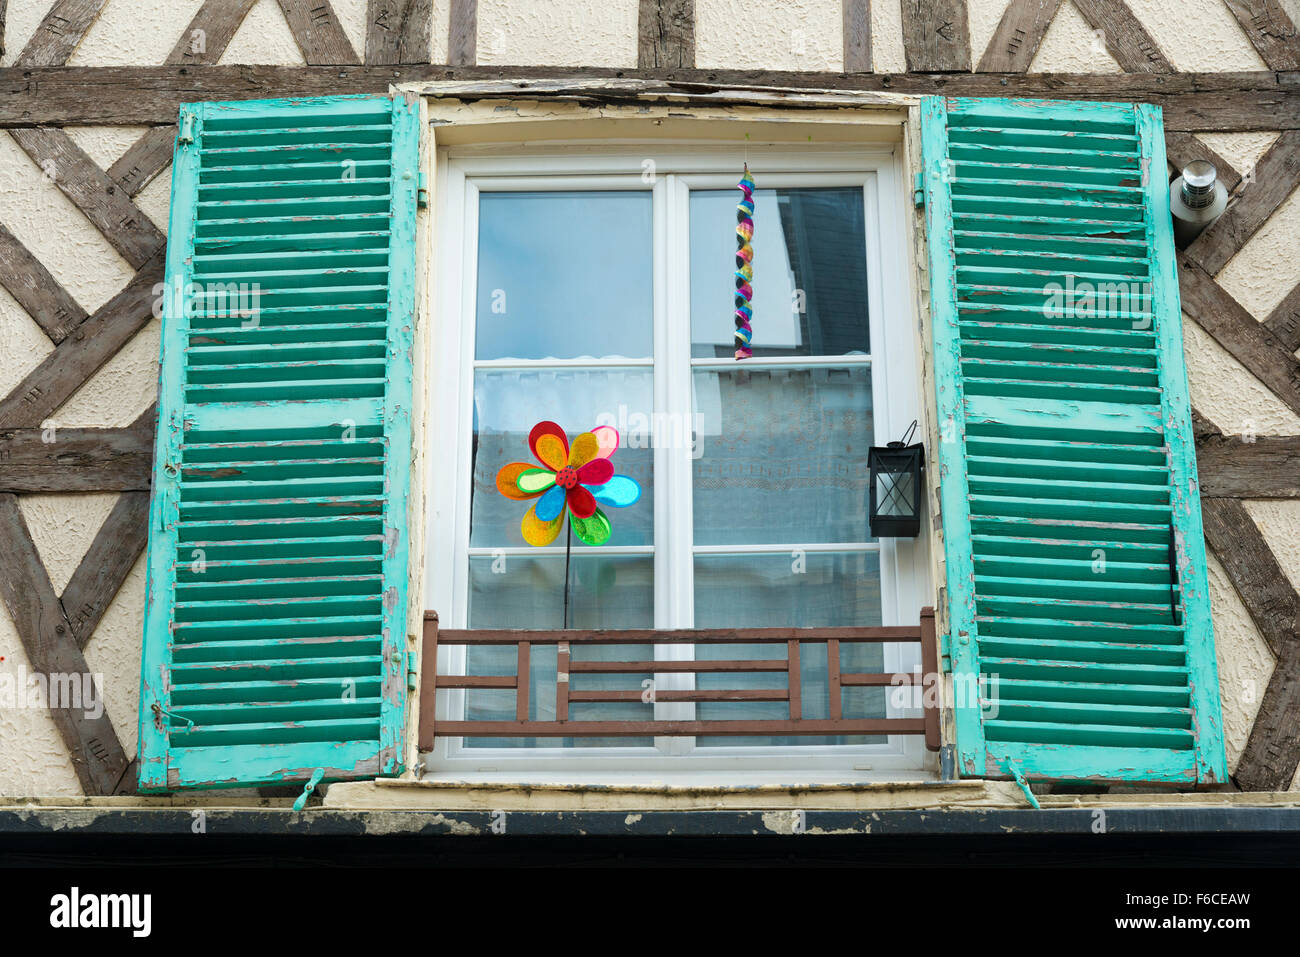 Une fenêtre sur un bâtiment en France avec des volets en bois peint Banque D'Images